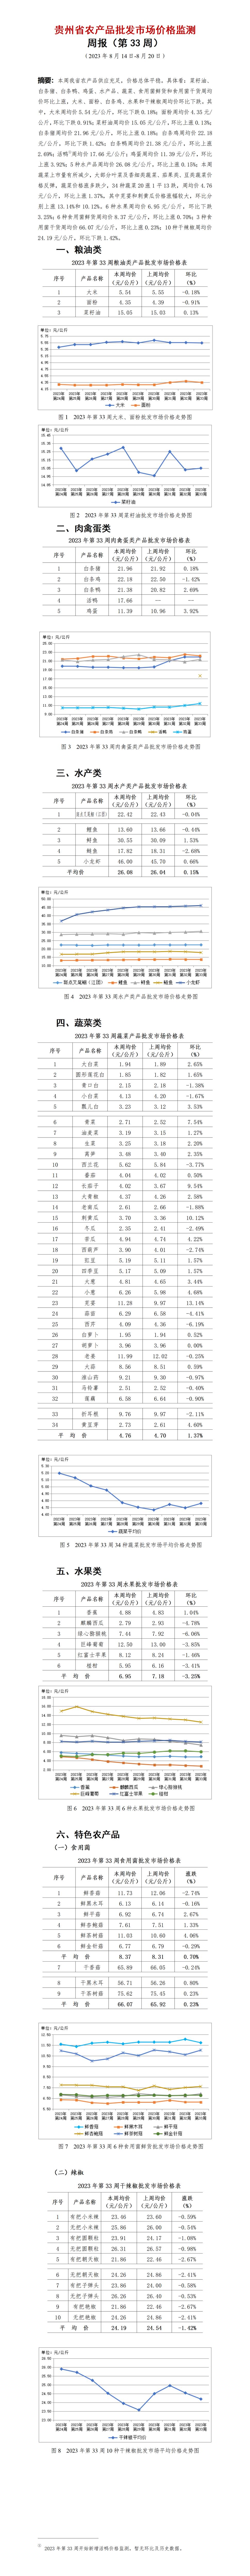 2023年33周-贵州省农产品批发市场价格监测周报-定_01